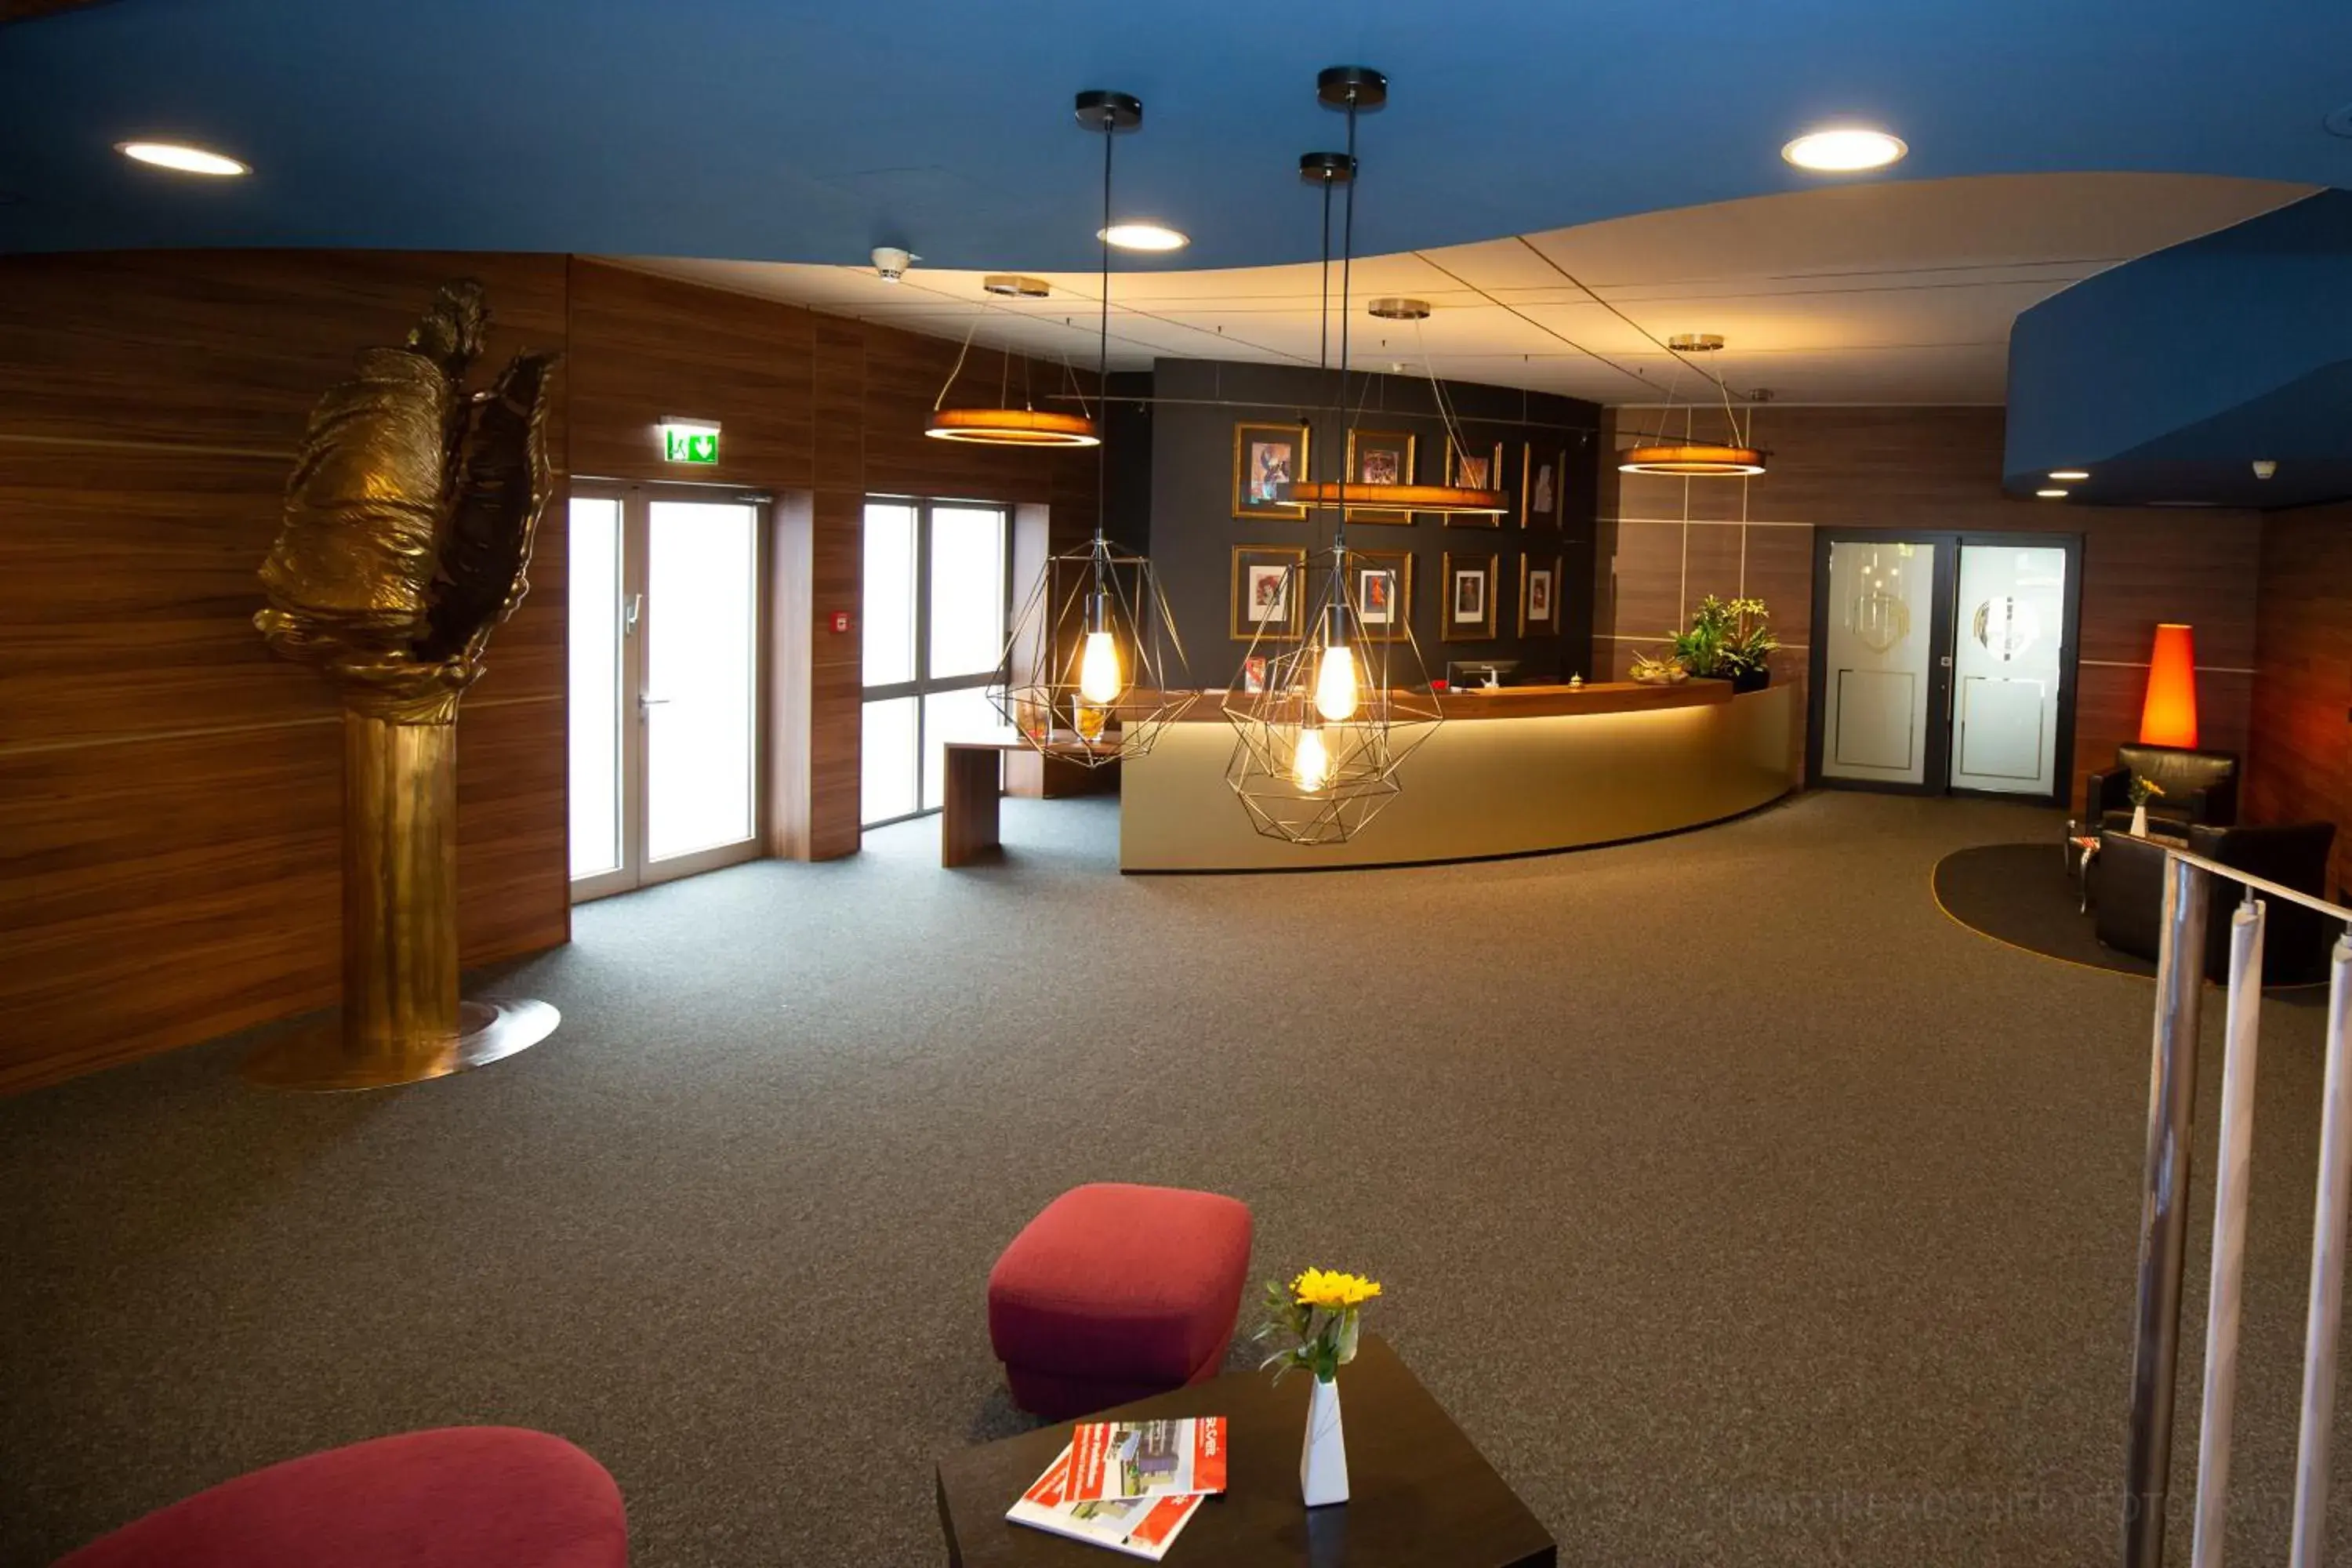 Lobby or reception in Hotel Fuchspalast